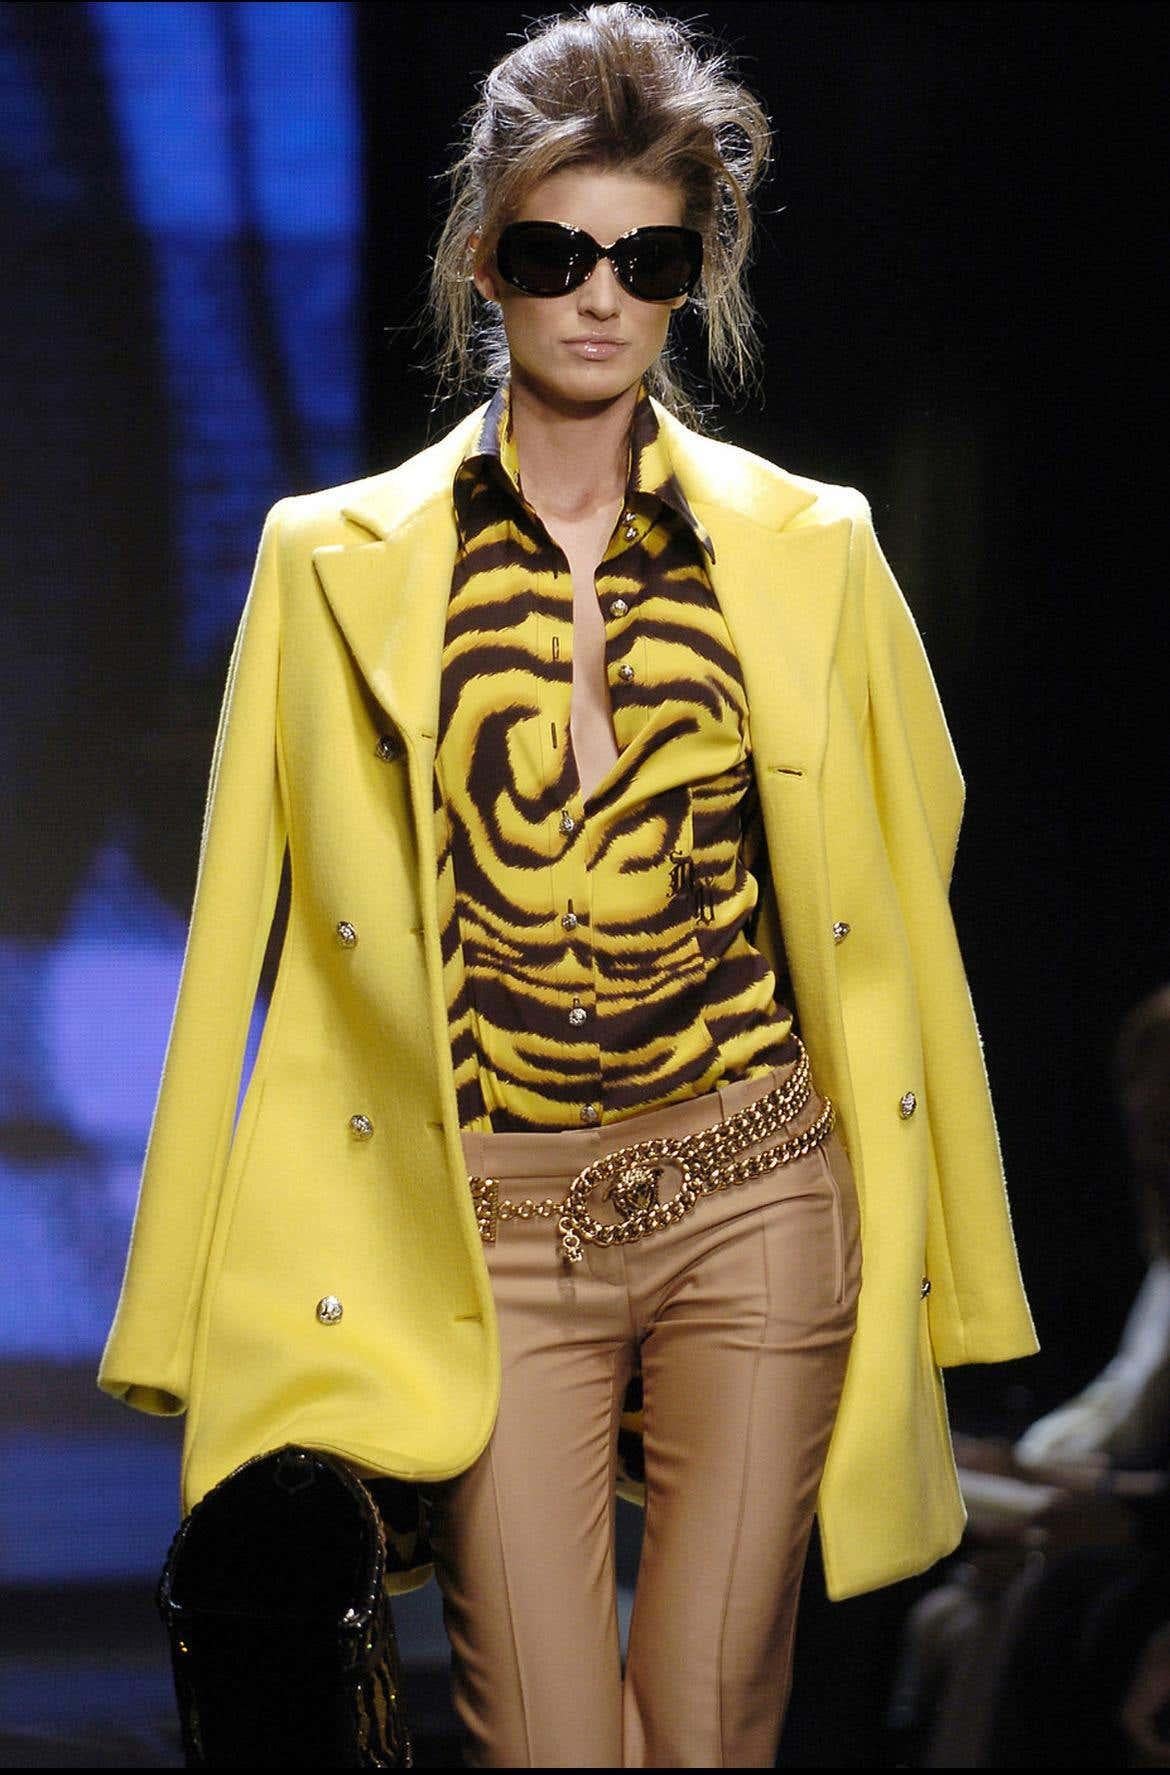 Wir präsentieren ein wunderschönes gelb-schwarzes Versace-Kleid mit Tigerstreifen, entworfen von Donatella Versace. Dieser wunderschöne Druck aus der Herbst/Winter-Kollektion 2004 wurde auf dem Laufsteg der Saison in mehreren Looks gezeigt. Dieses